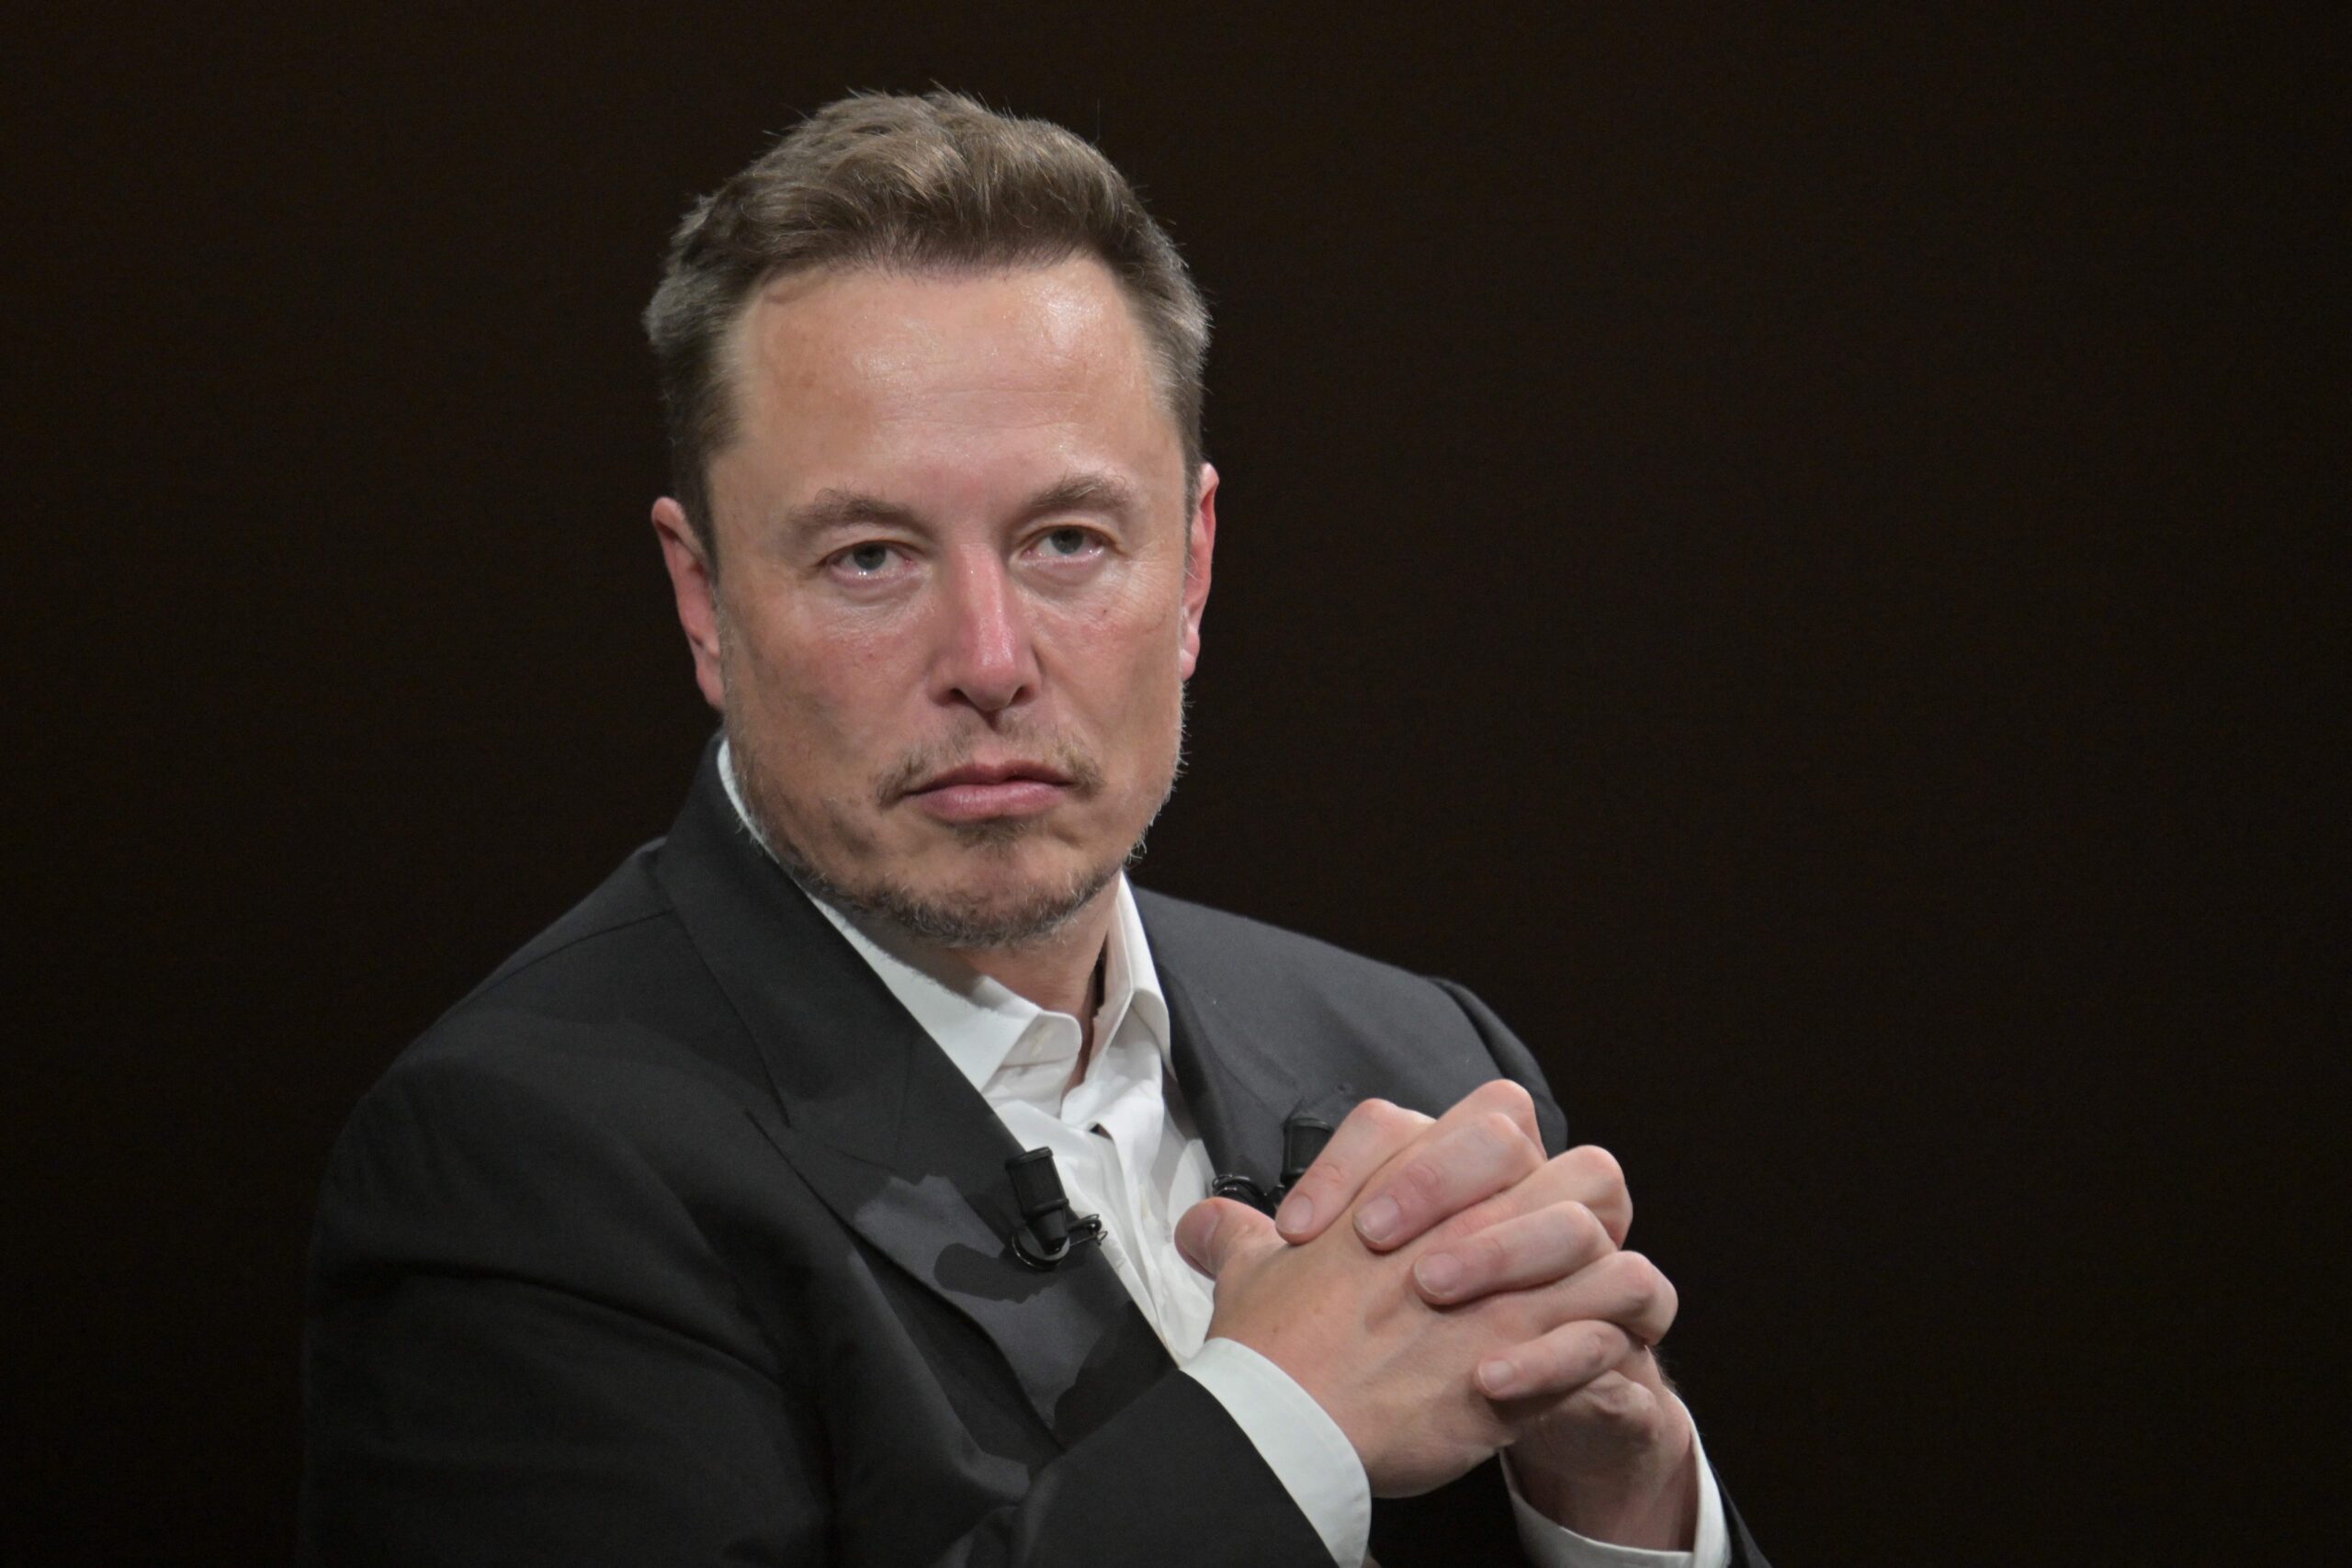 Elon Musk continua liderando com o X apos fracasso do Threads scaled